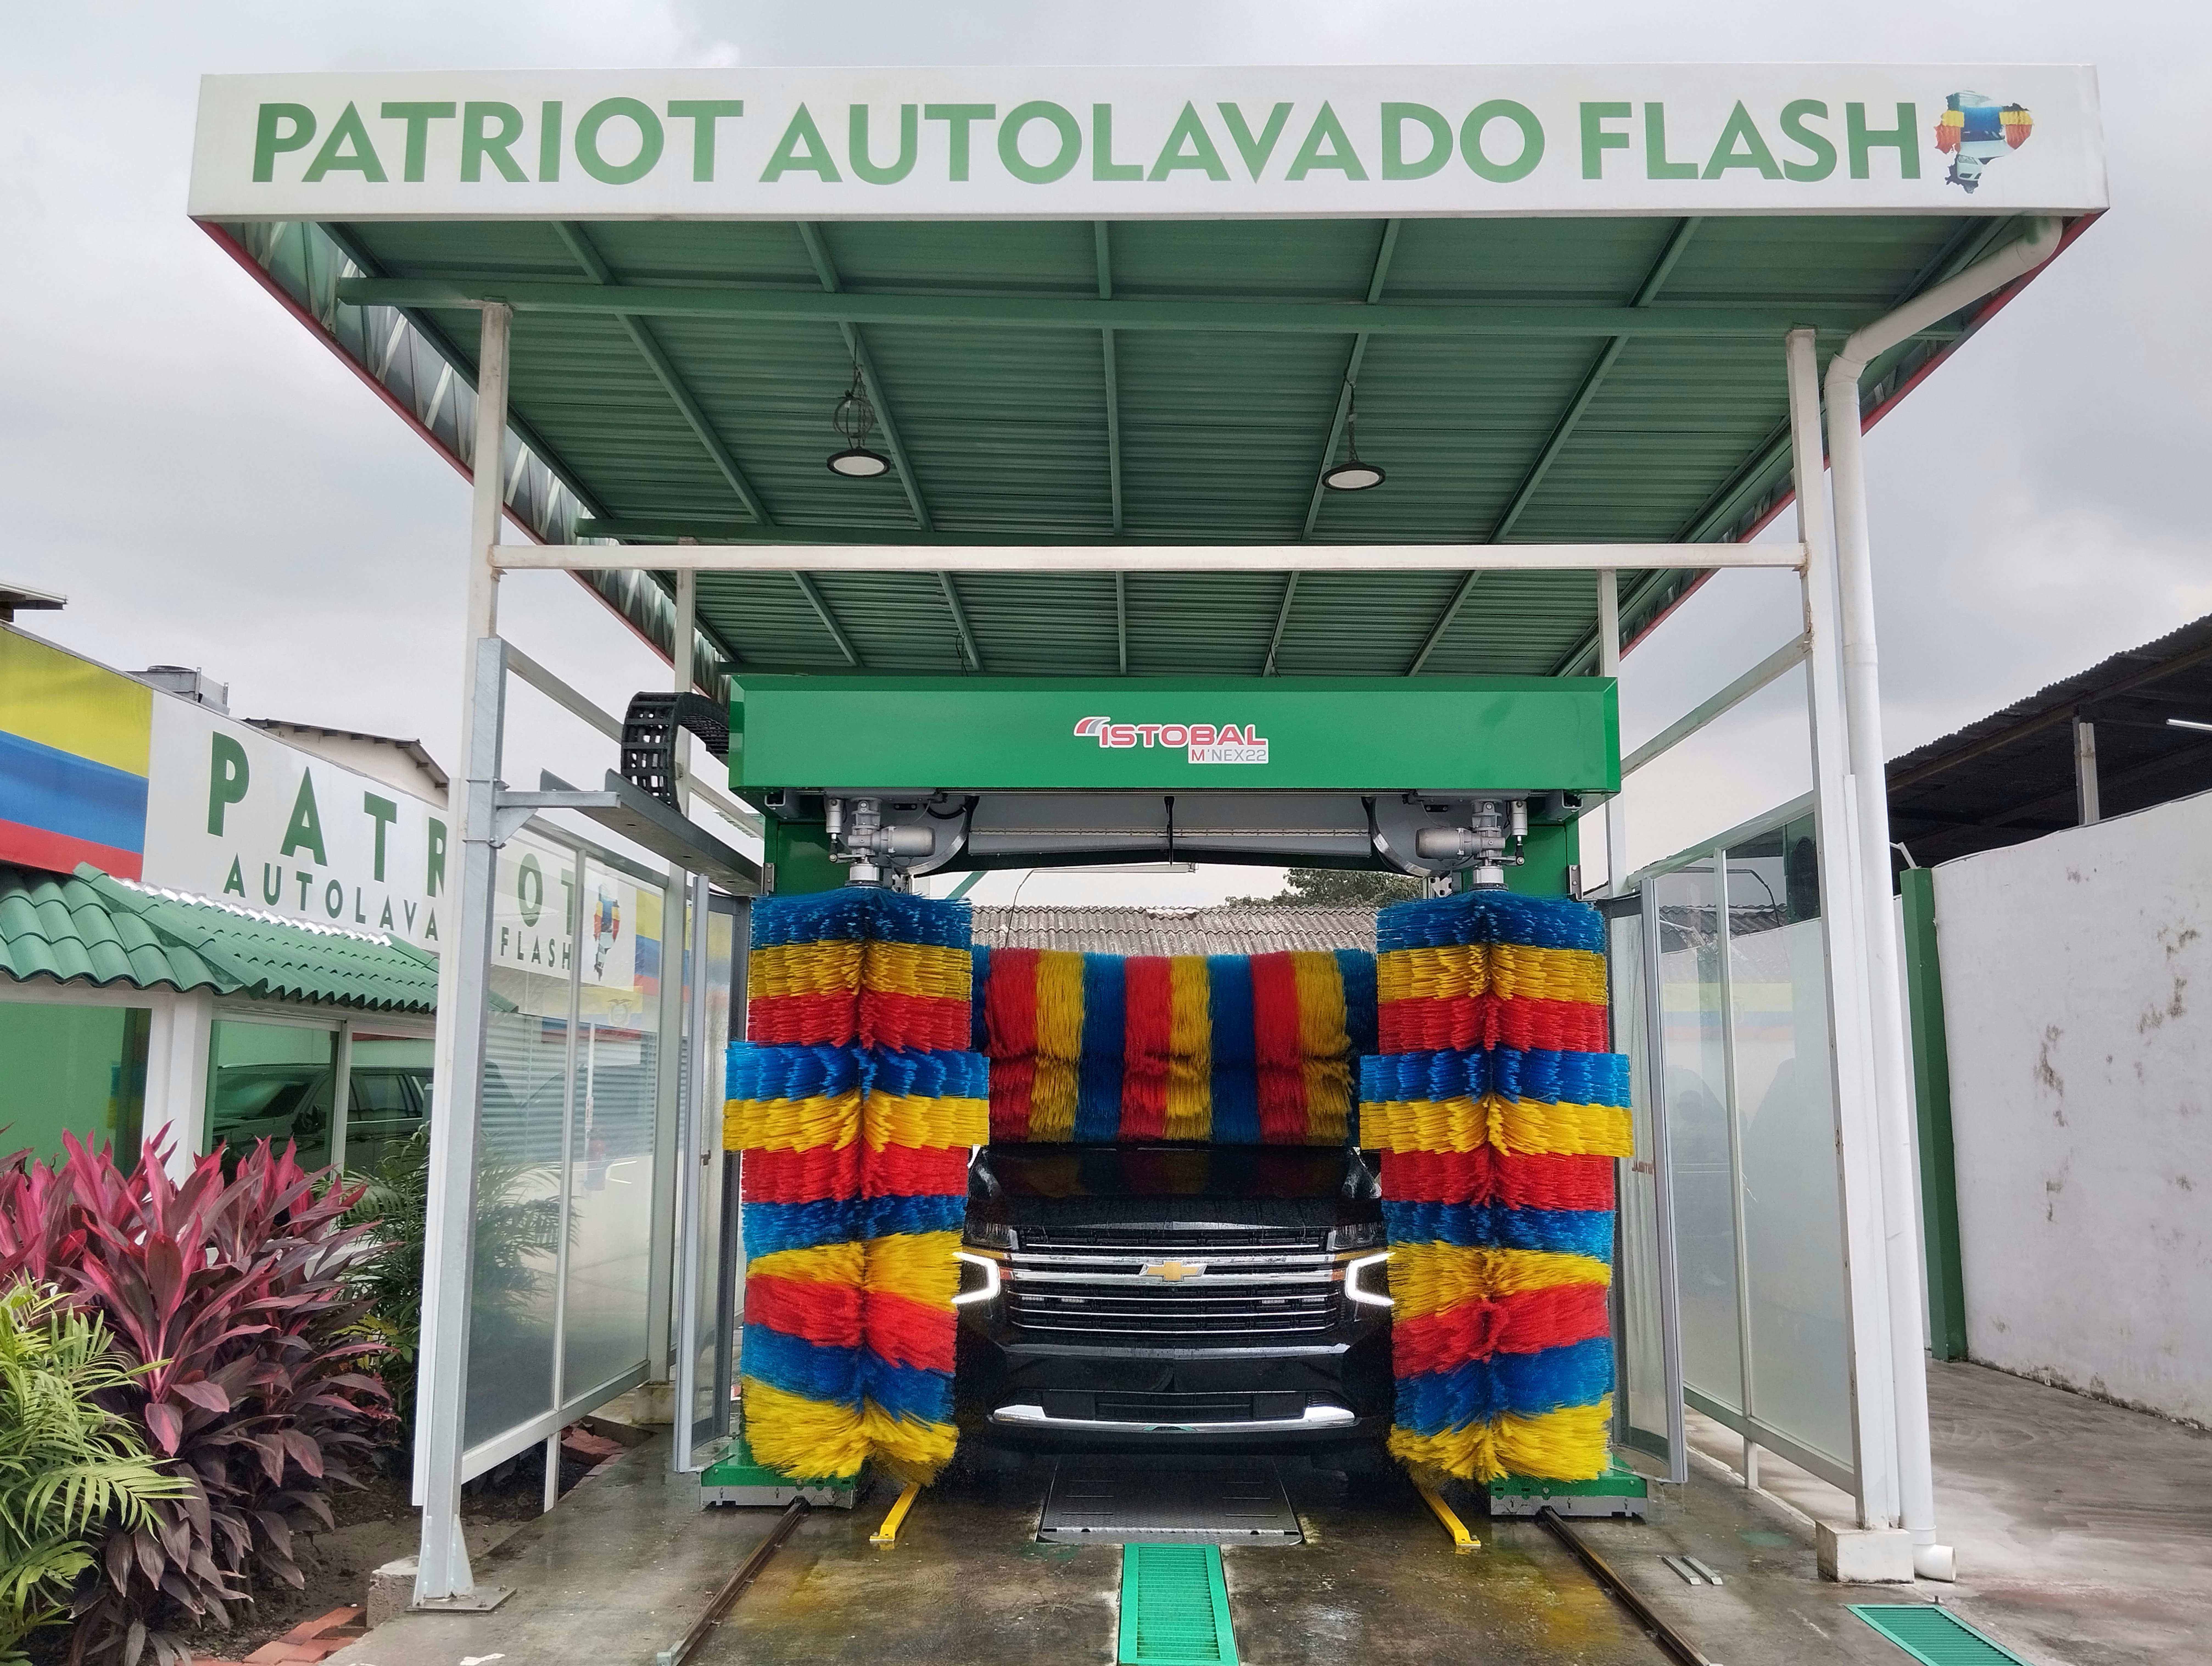 Autolavado Flash de Guayaquil, Ecuador, pone el ejemplo a nivel nacional de cómo se hace un buen car wash.